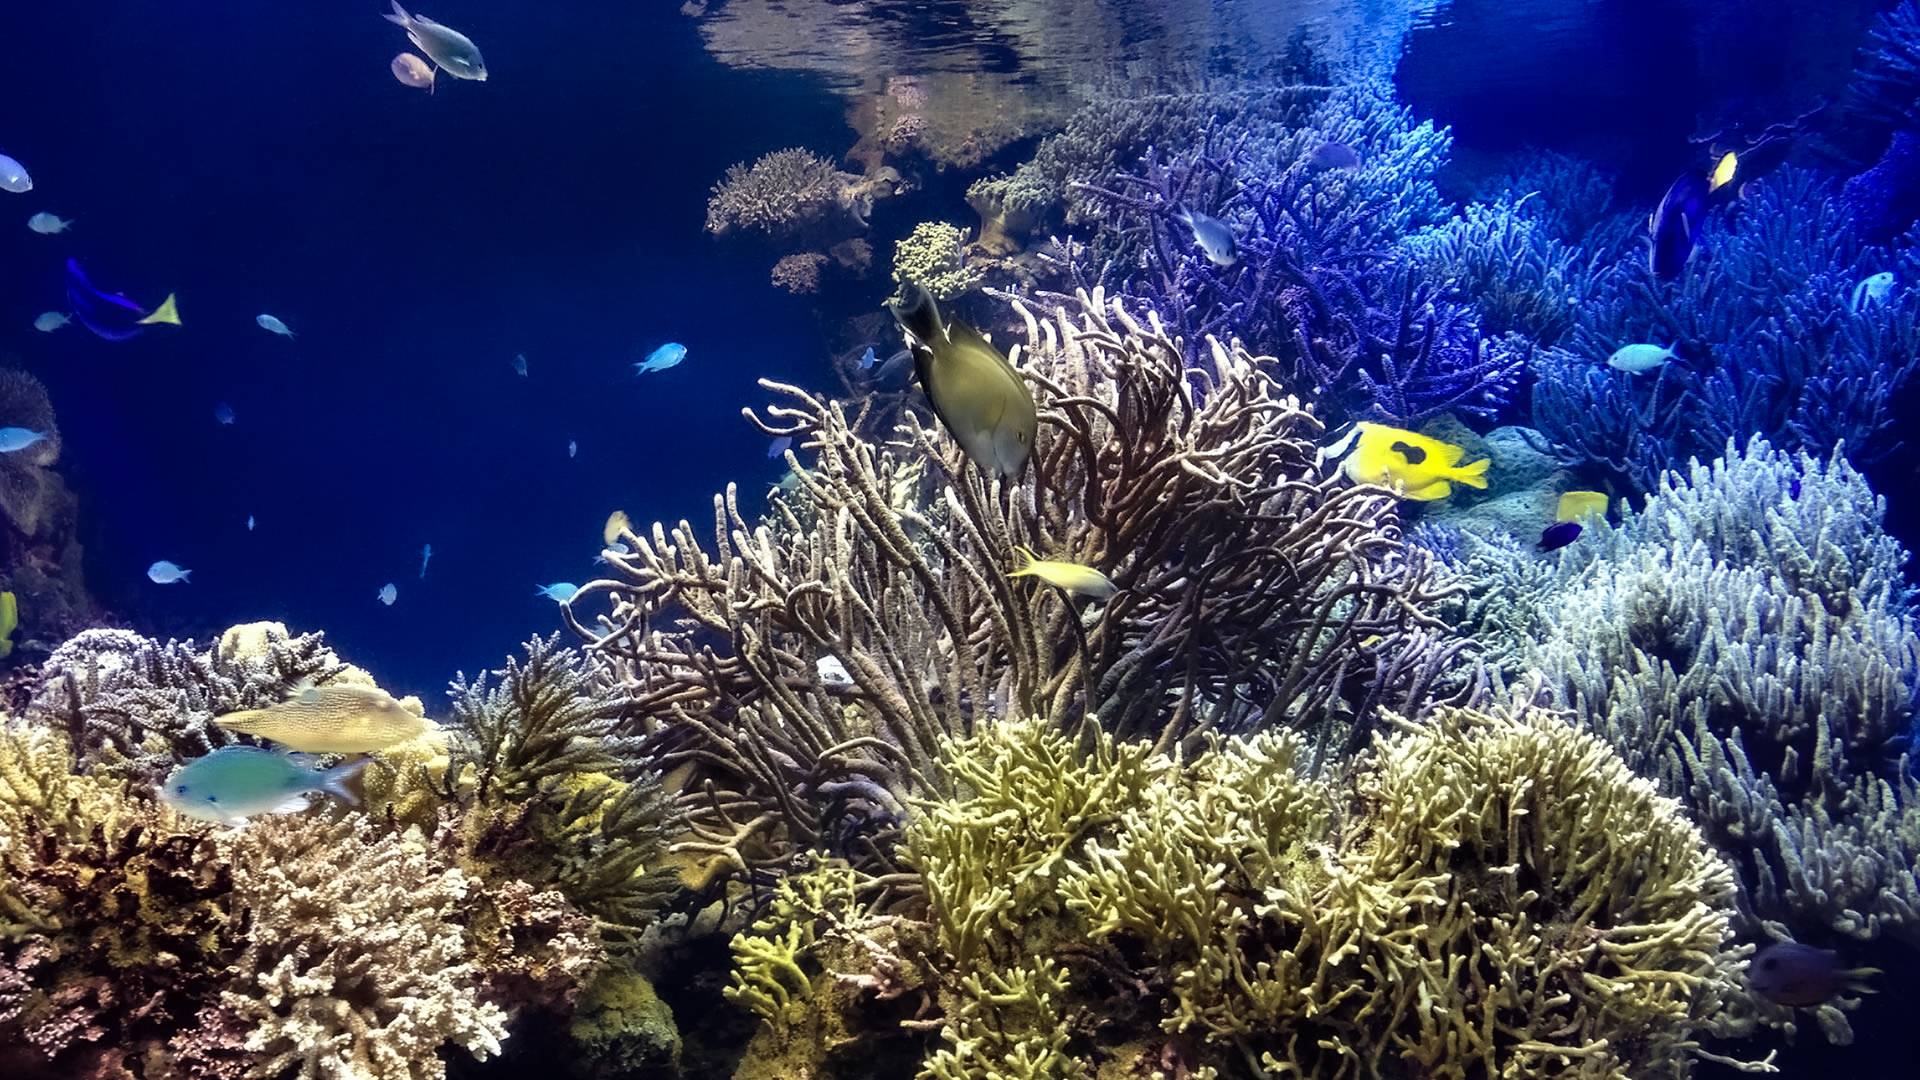 水槽で泳ぐ熱帯魚 無料画像 フリー写真素材 Activephotostyle